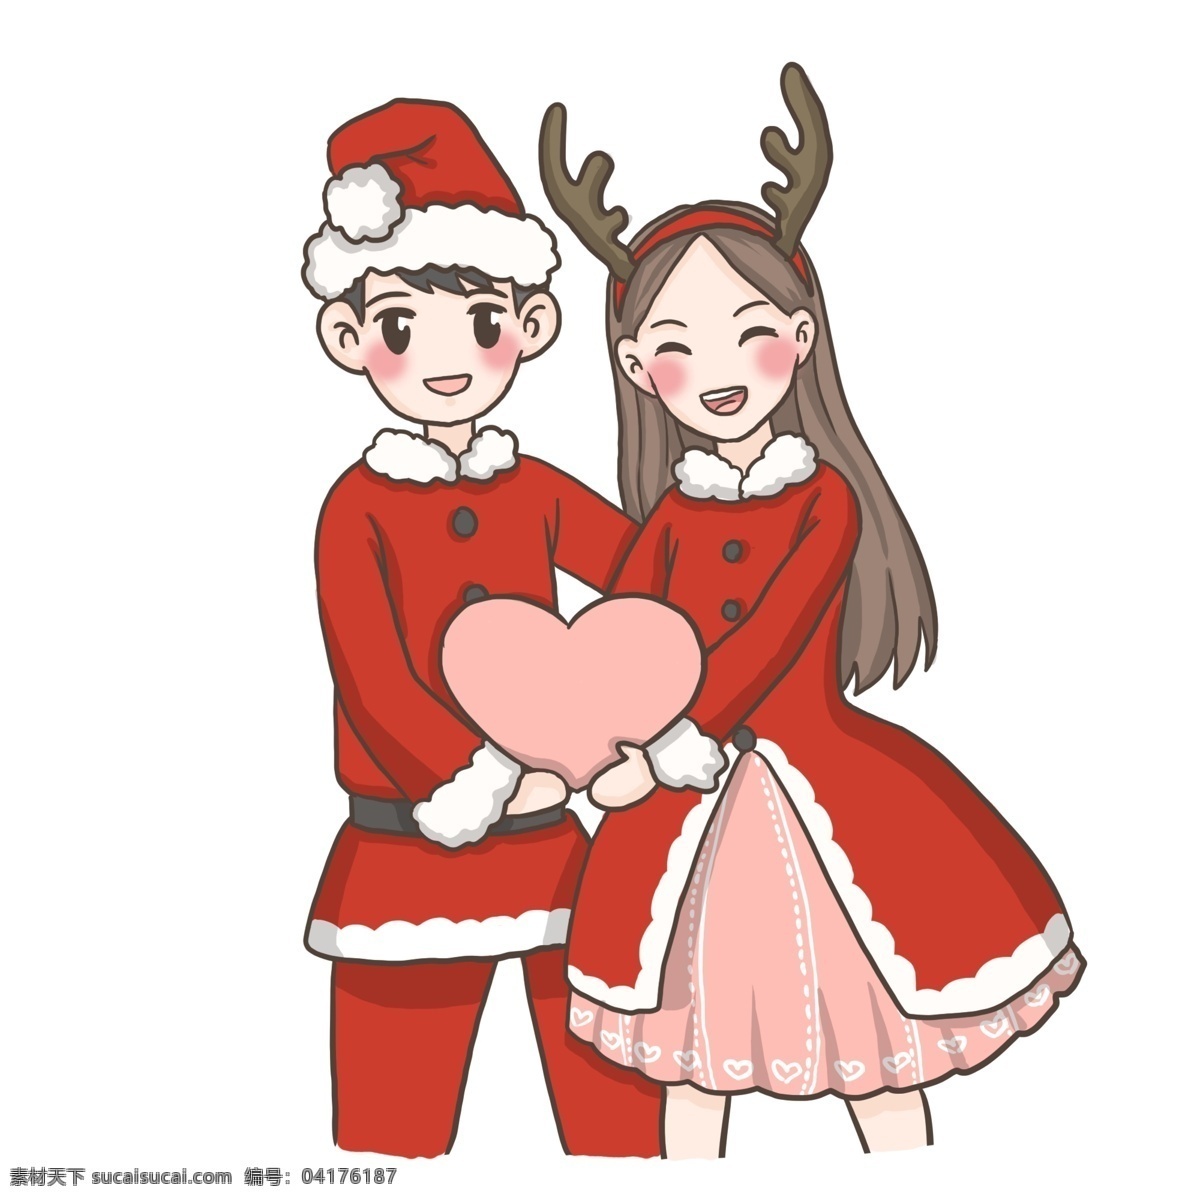 圣诞节 情侣 冬天 冬装 红色衣装 可爱风小贴纸 双人 温暖甜美 开心 圣诞 情侣装 爱心 装饰